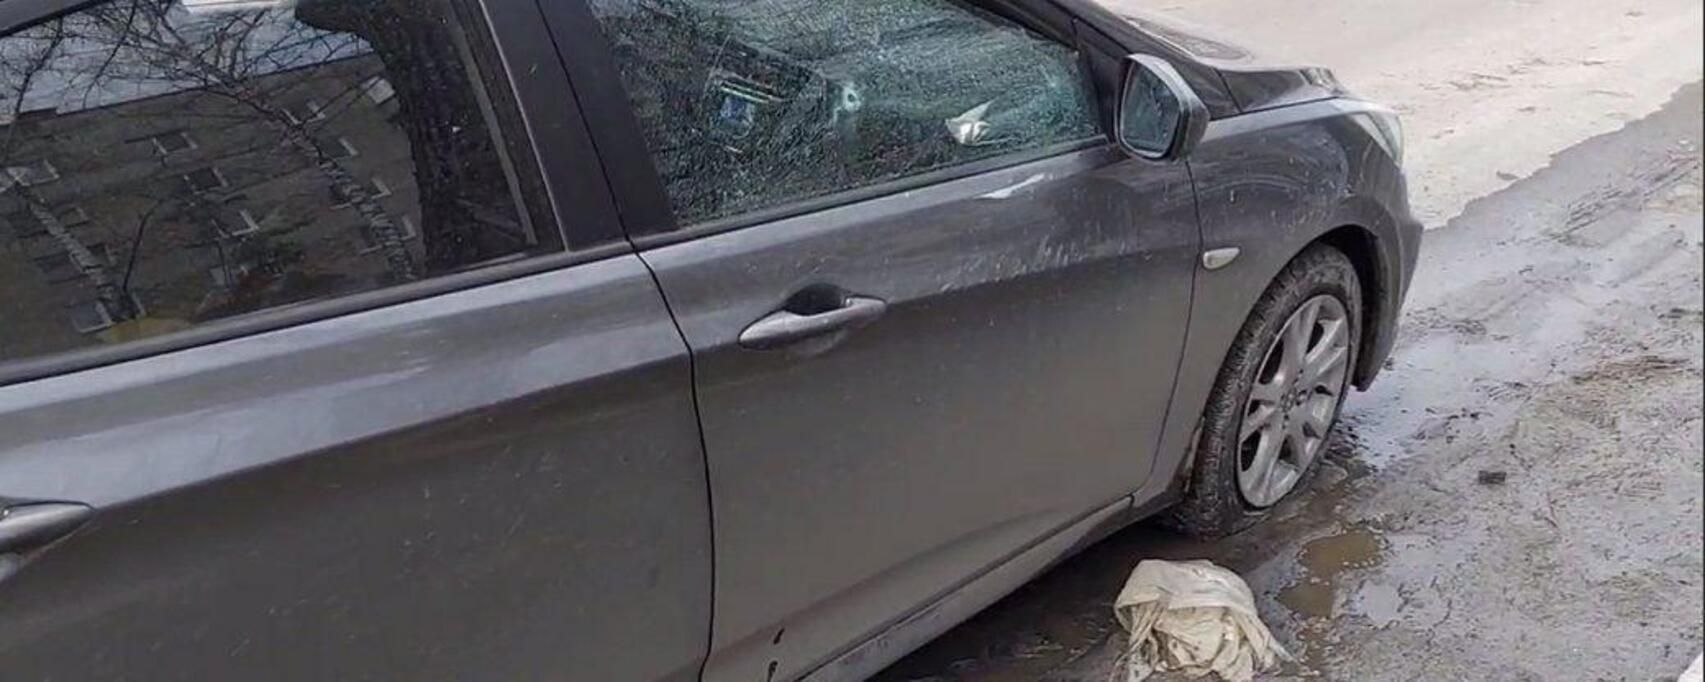 У Сумах окупанти обстріляли авто, в якому їхала сім'я з трьома дітьми: є загиблі - 24 Канал